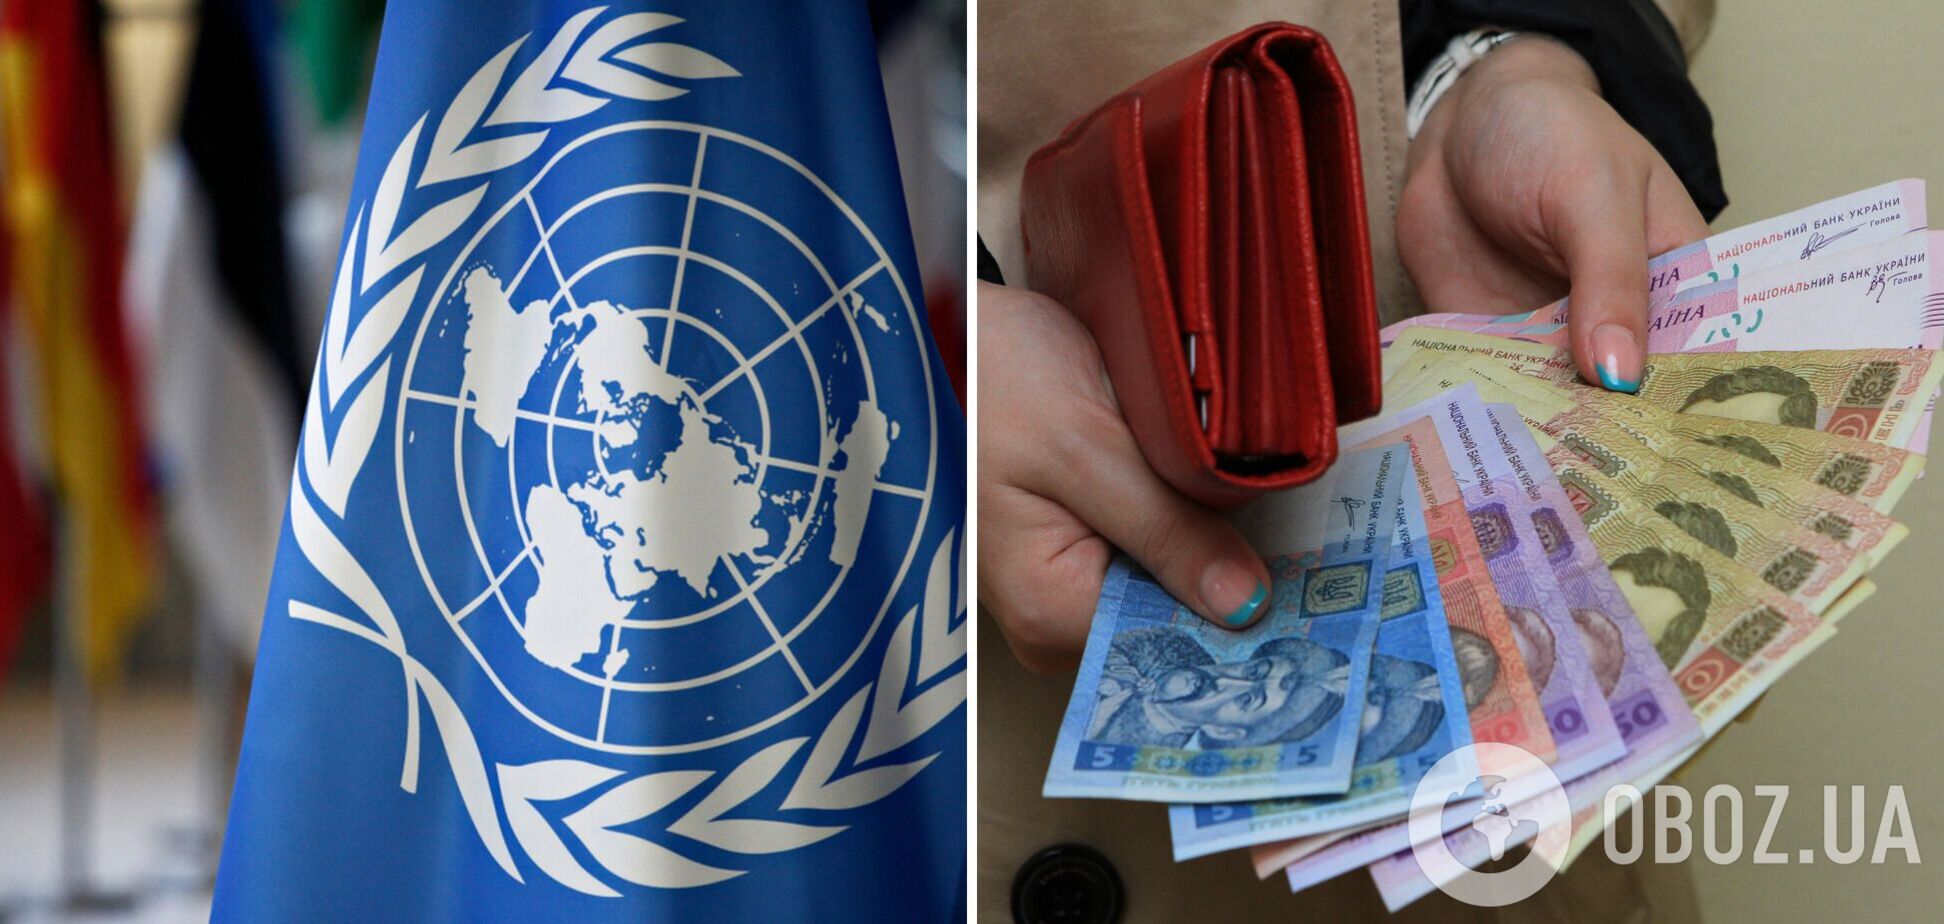 ООН виплатить українцям по 6600 грн